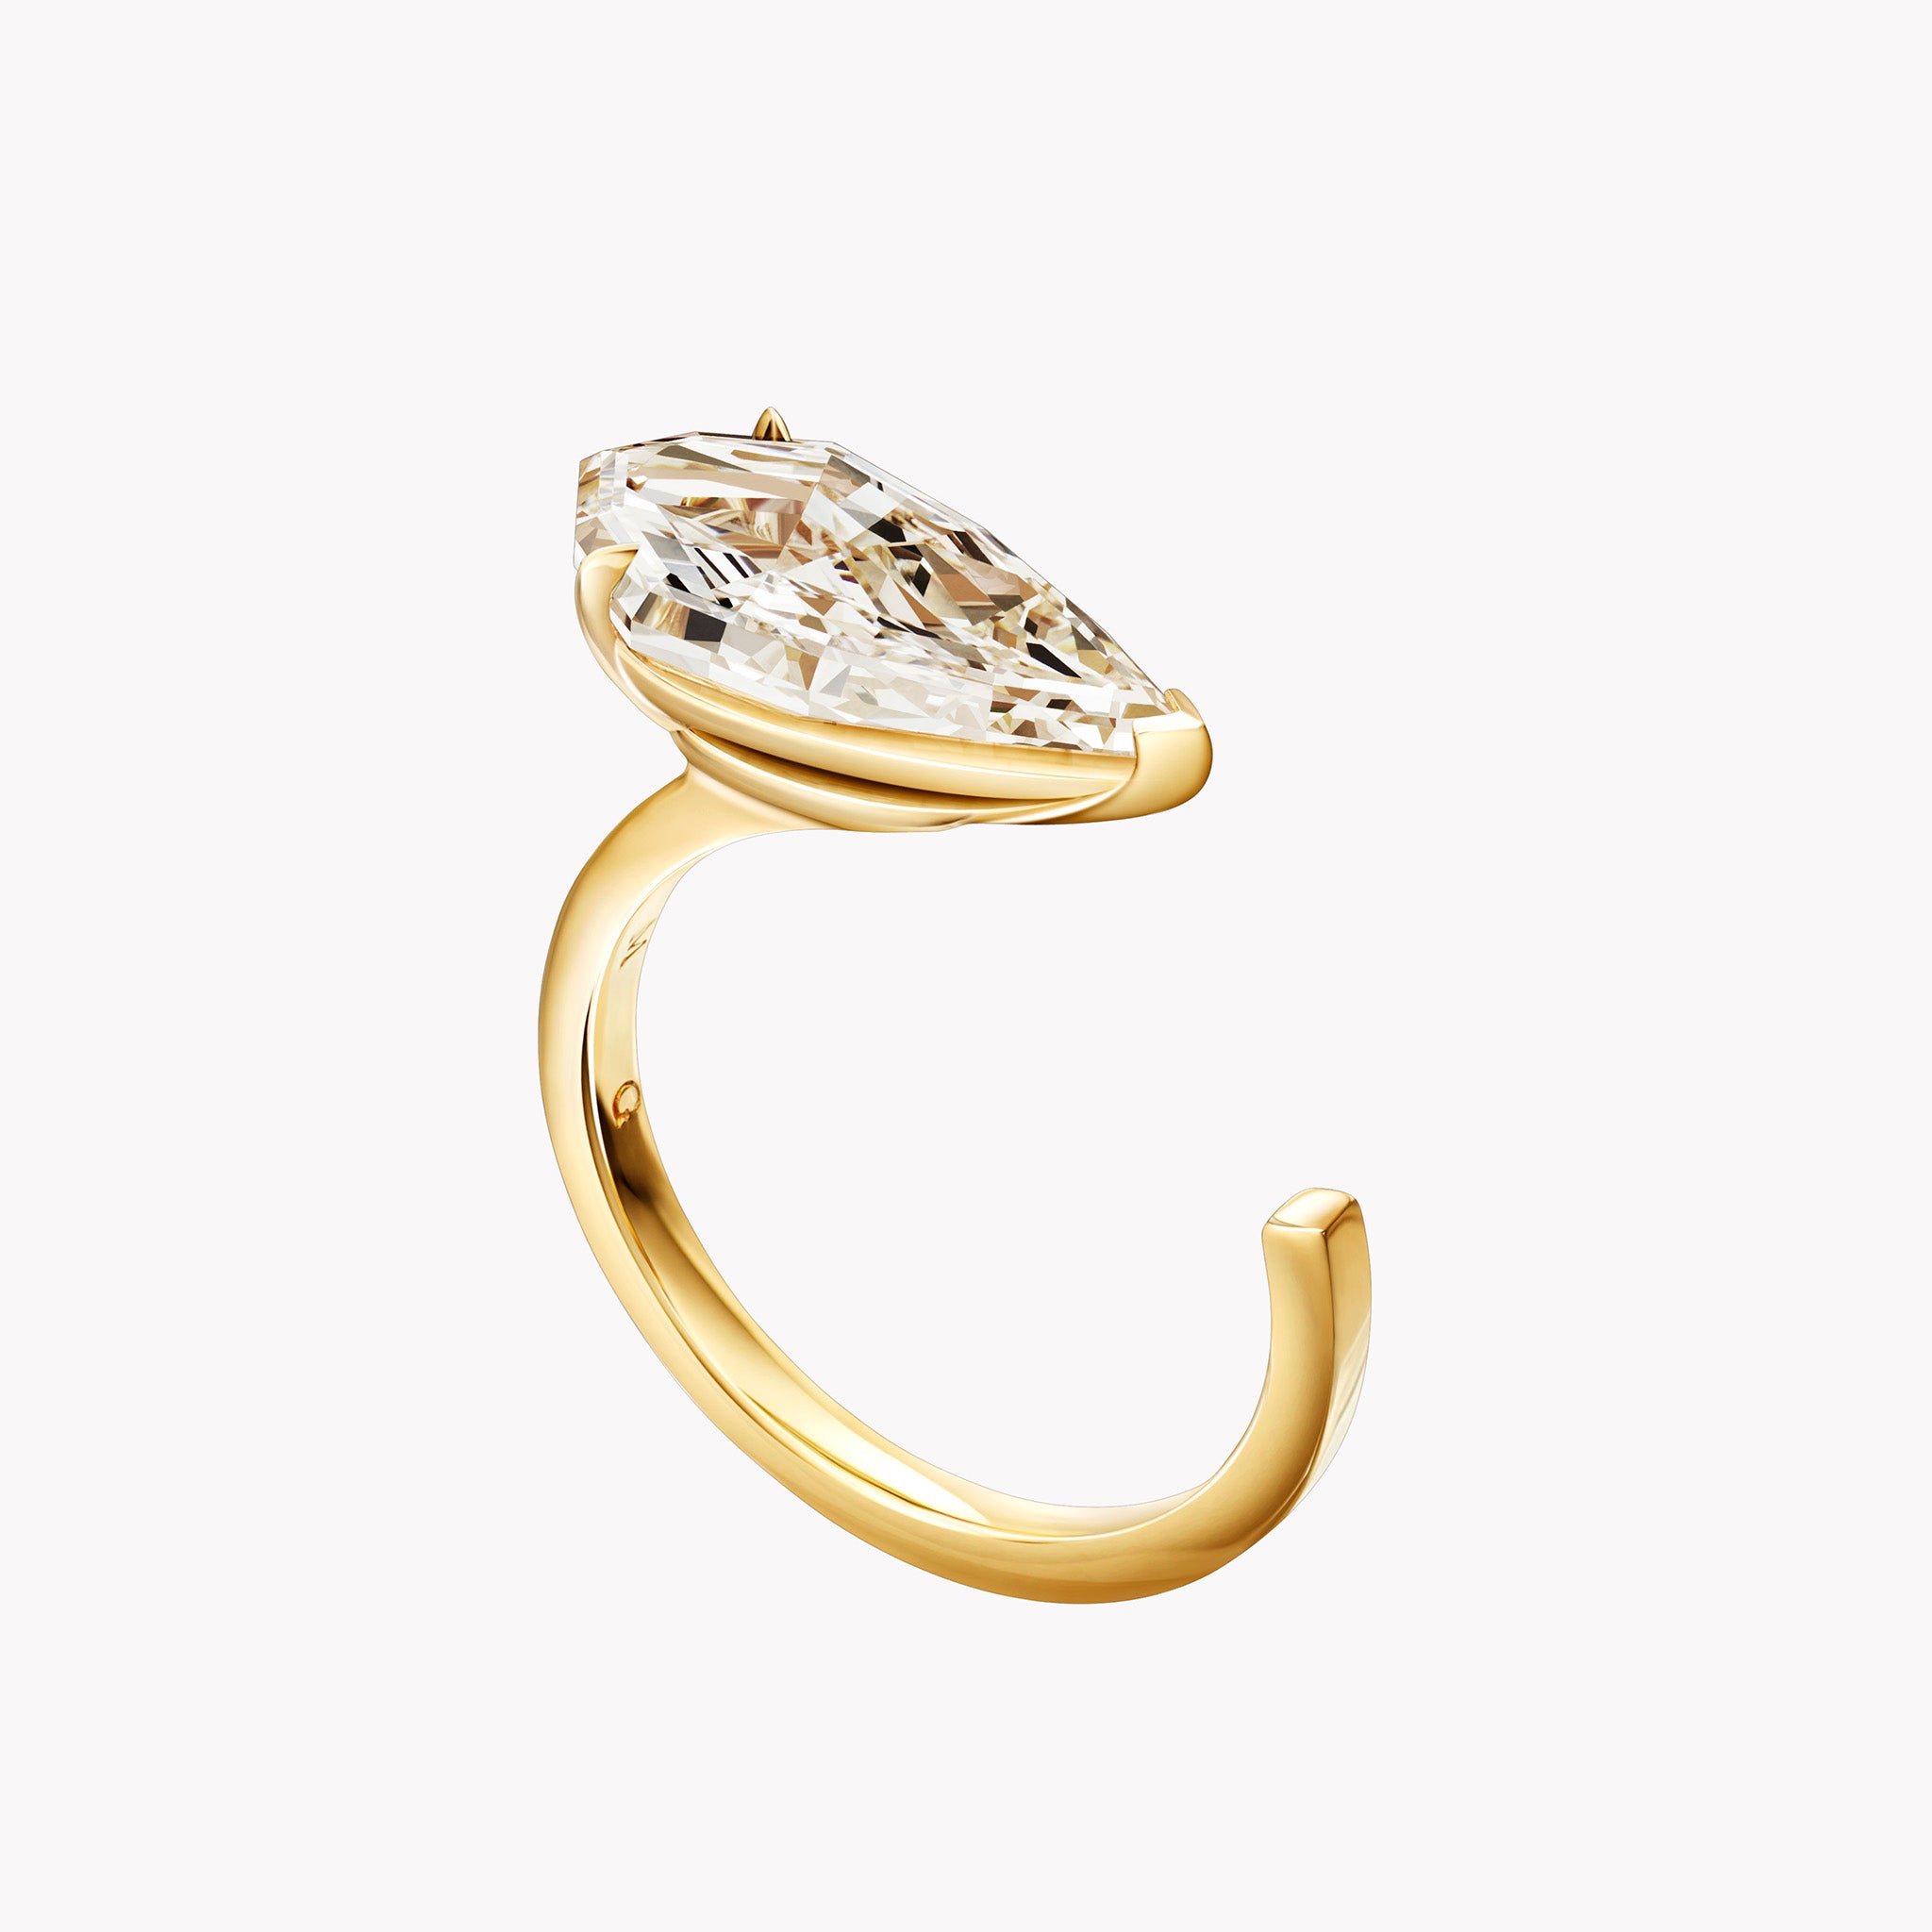 The Keira Diamond Ring